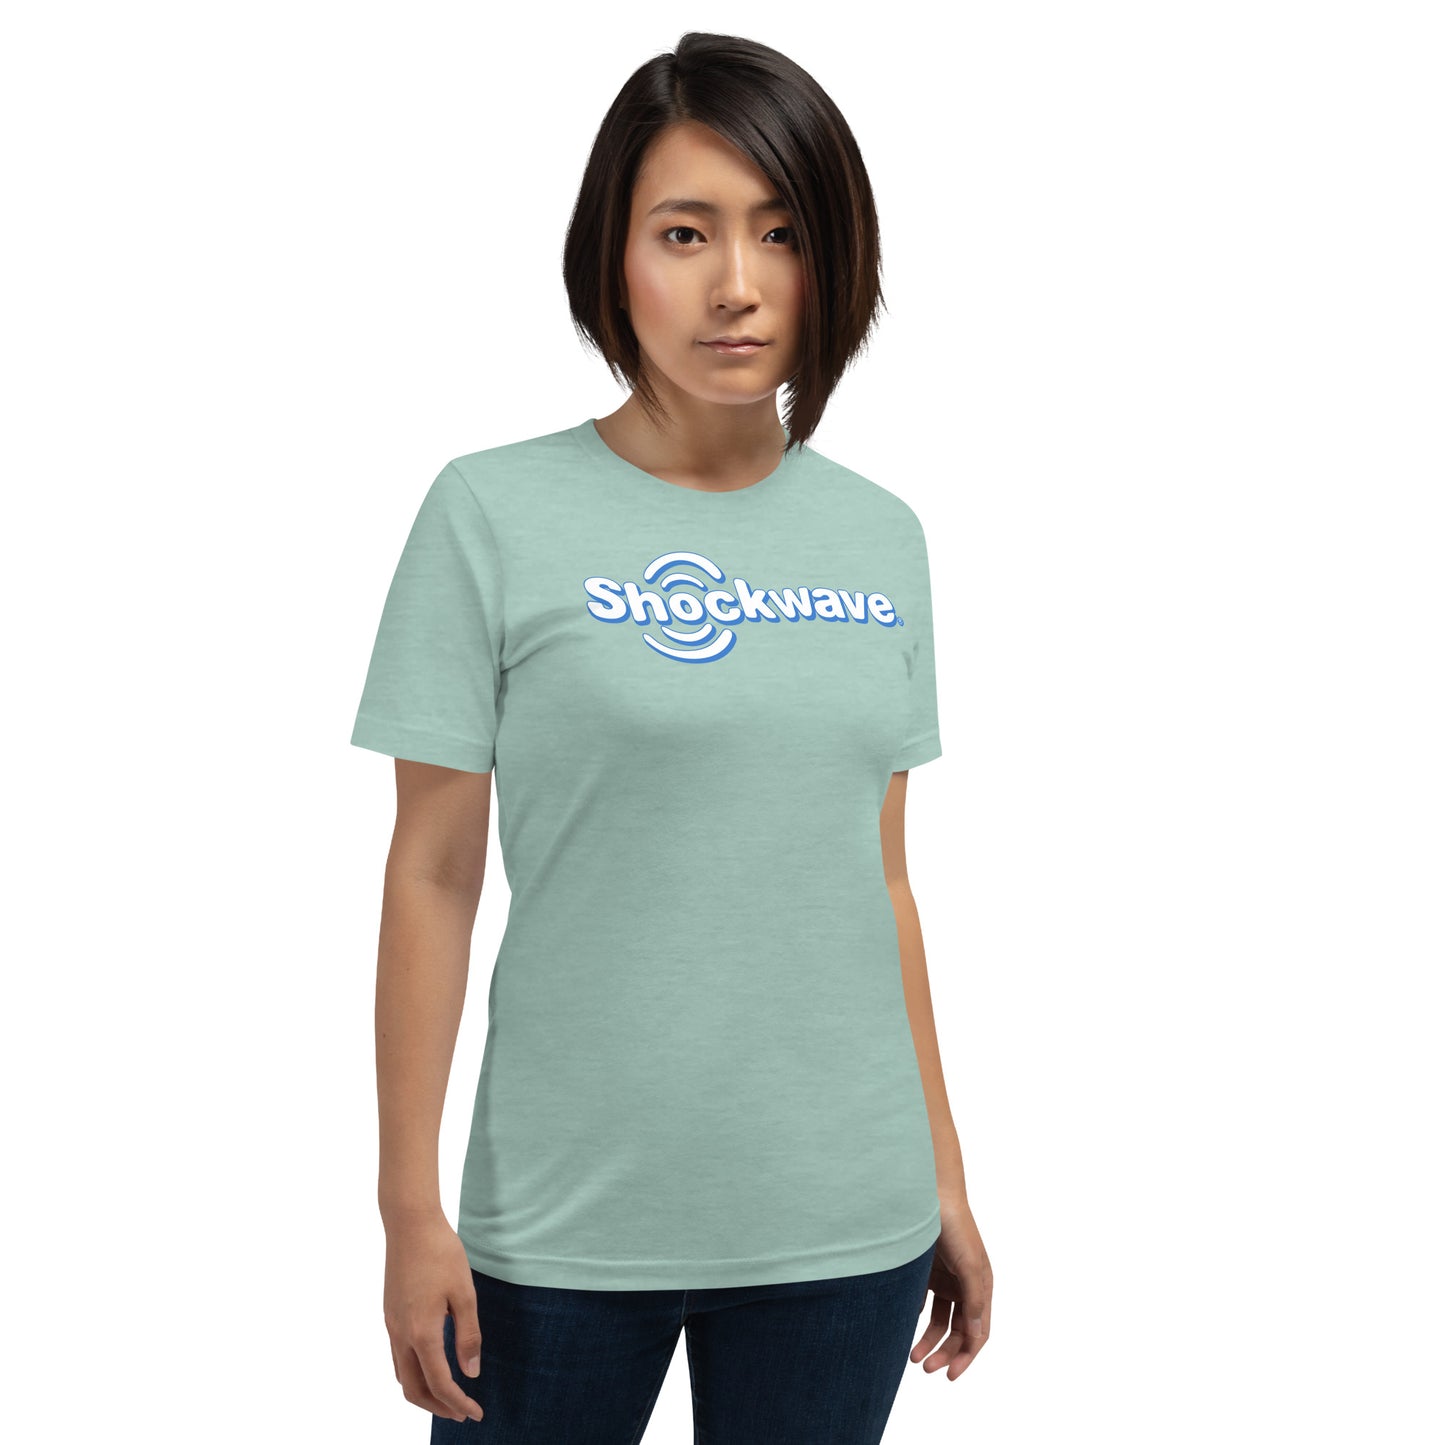 Shockwave unisex t-shirt